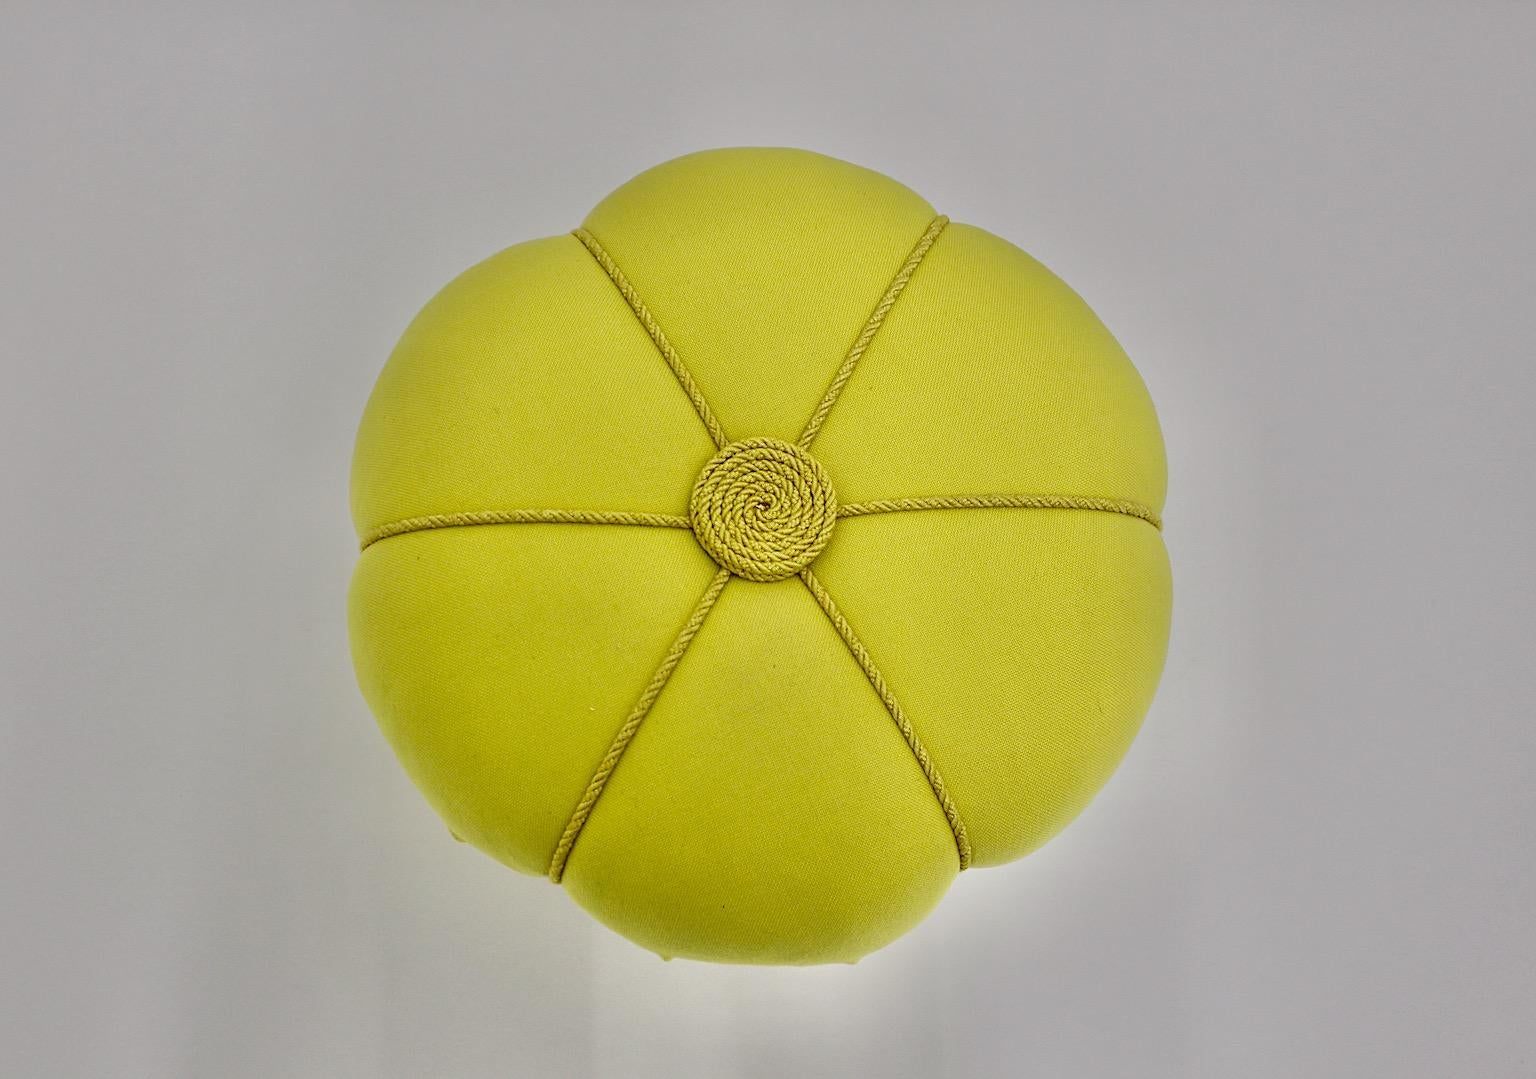 Tabouret ou pouf Art Déco jaune autrichien, qui a été conçu et fabriqué dans les années 1930.
Les matériaux de ce beau tabouret sont l'épicéa, le bois de cerisier et le tissu jaune citron avec cordons.
Nous aimons ce tabouret pour sa belle taille et